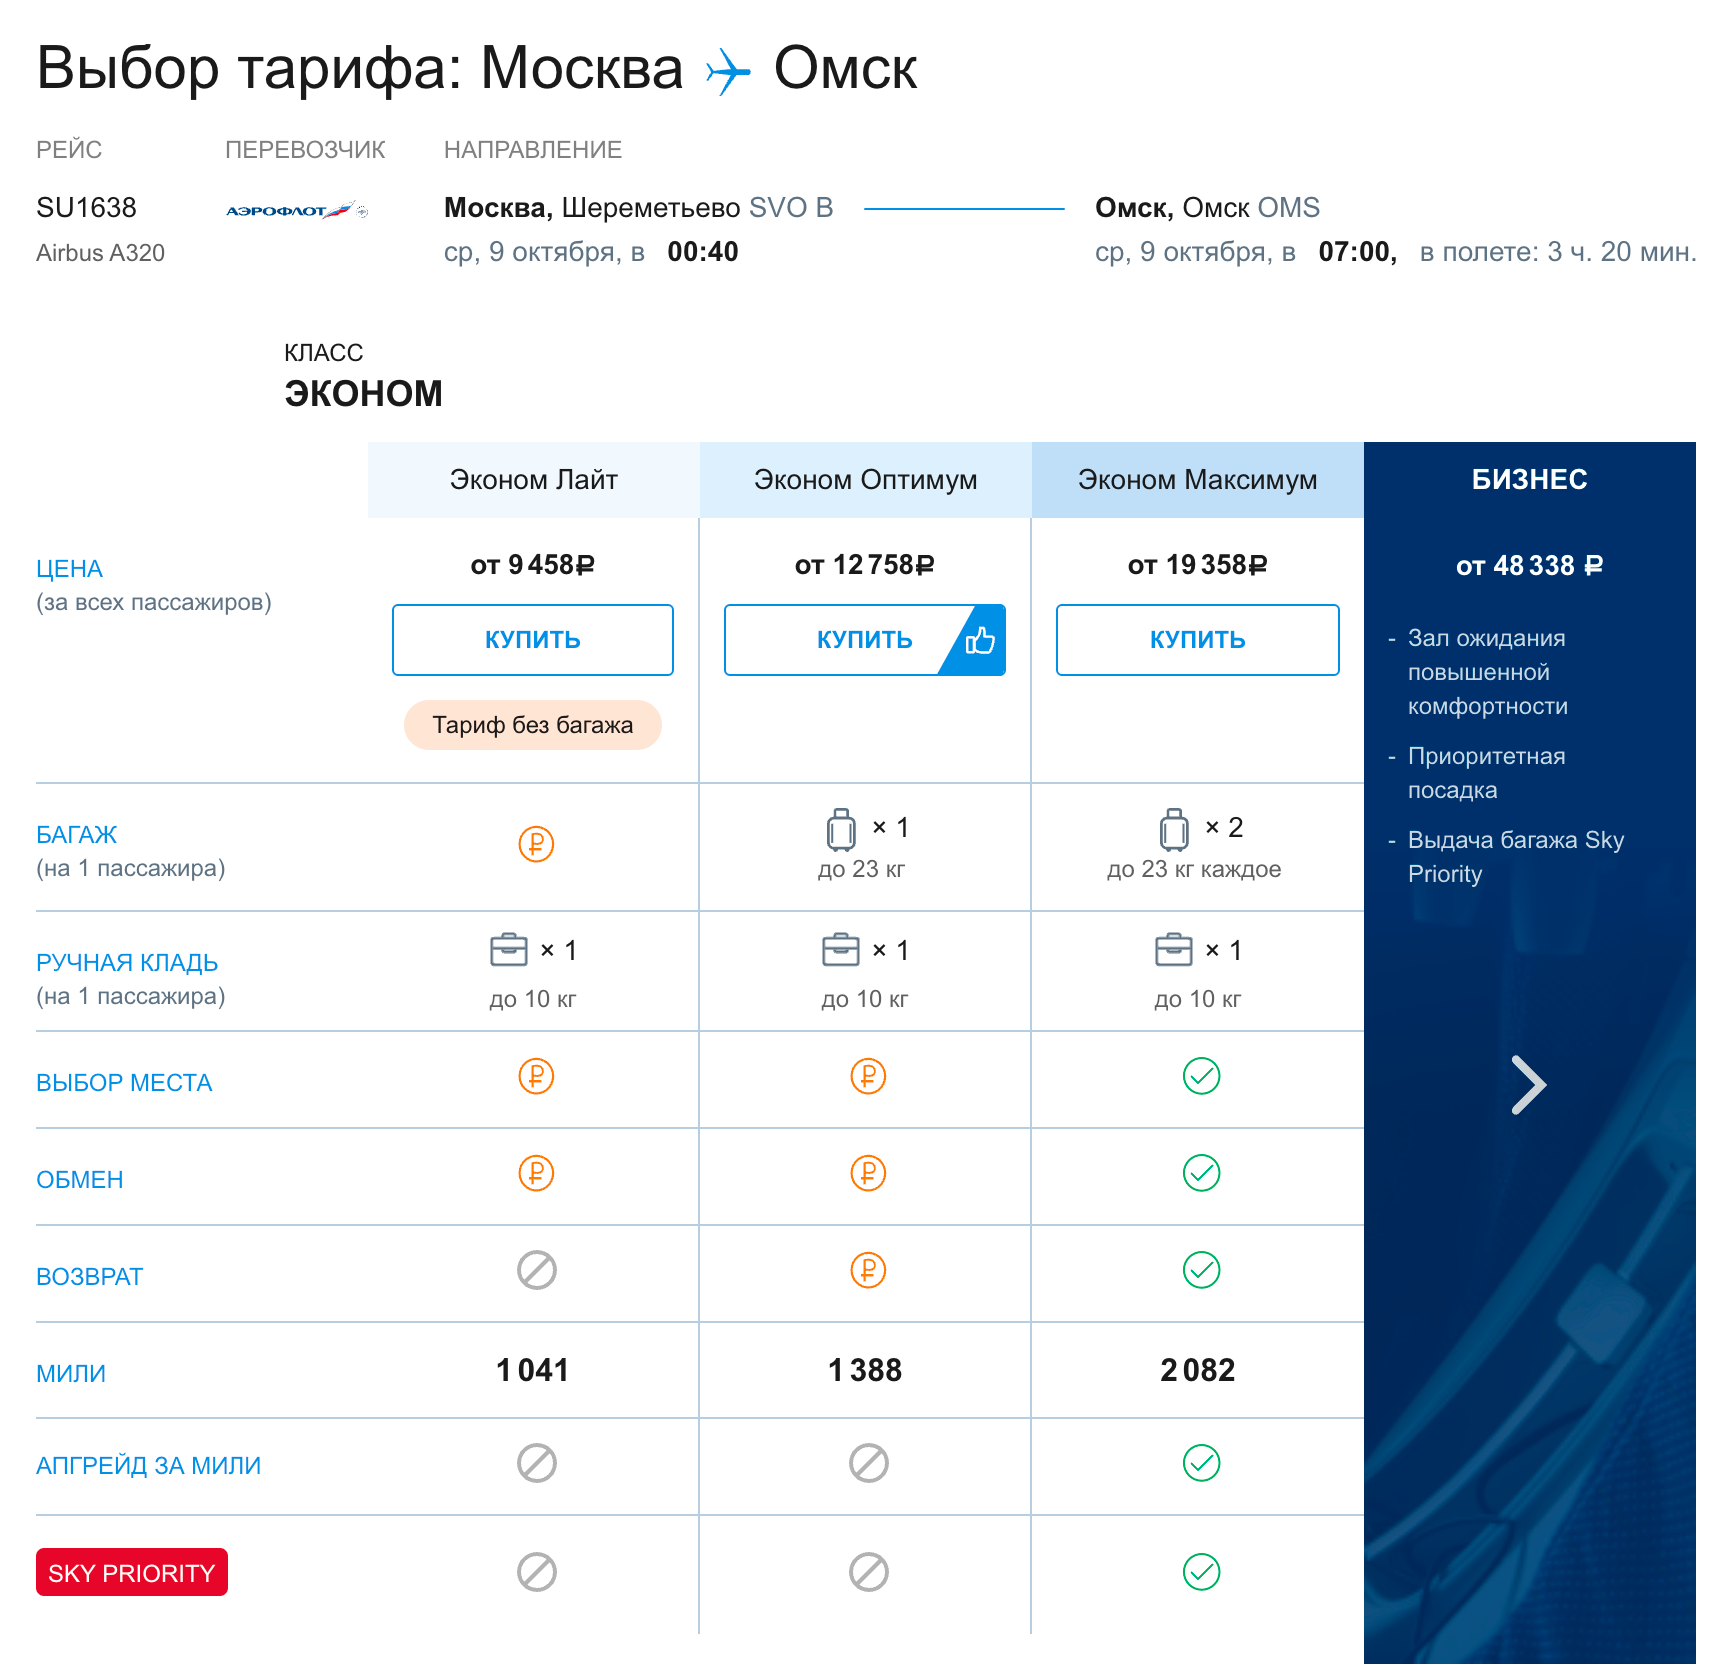 После этого вы попадете на страницу с тарифами для выбранного рейса. Количество миль, которое начислят за рейс, отображается в строке «мили». Источник: aeroflot.ru